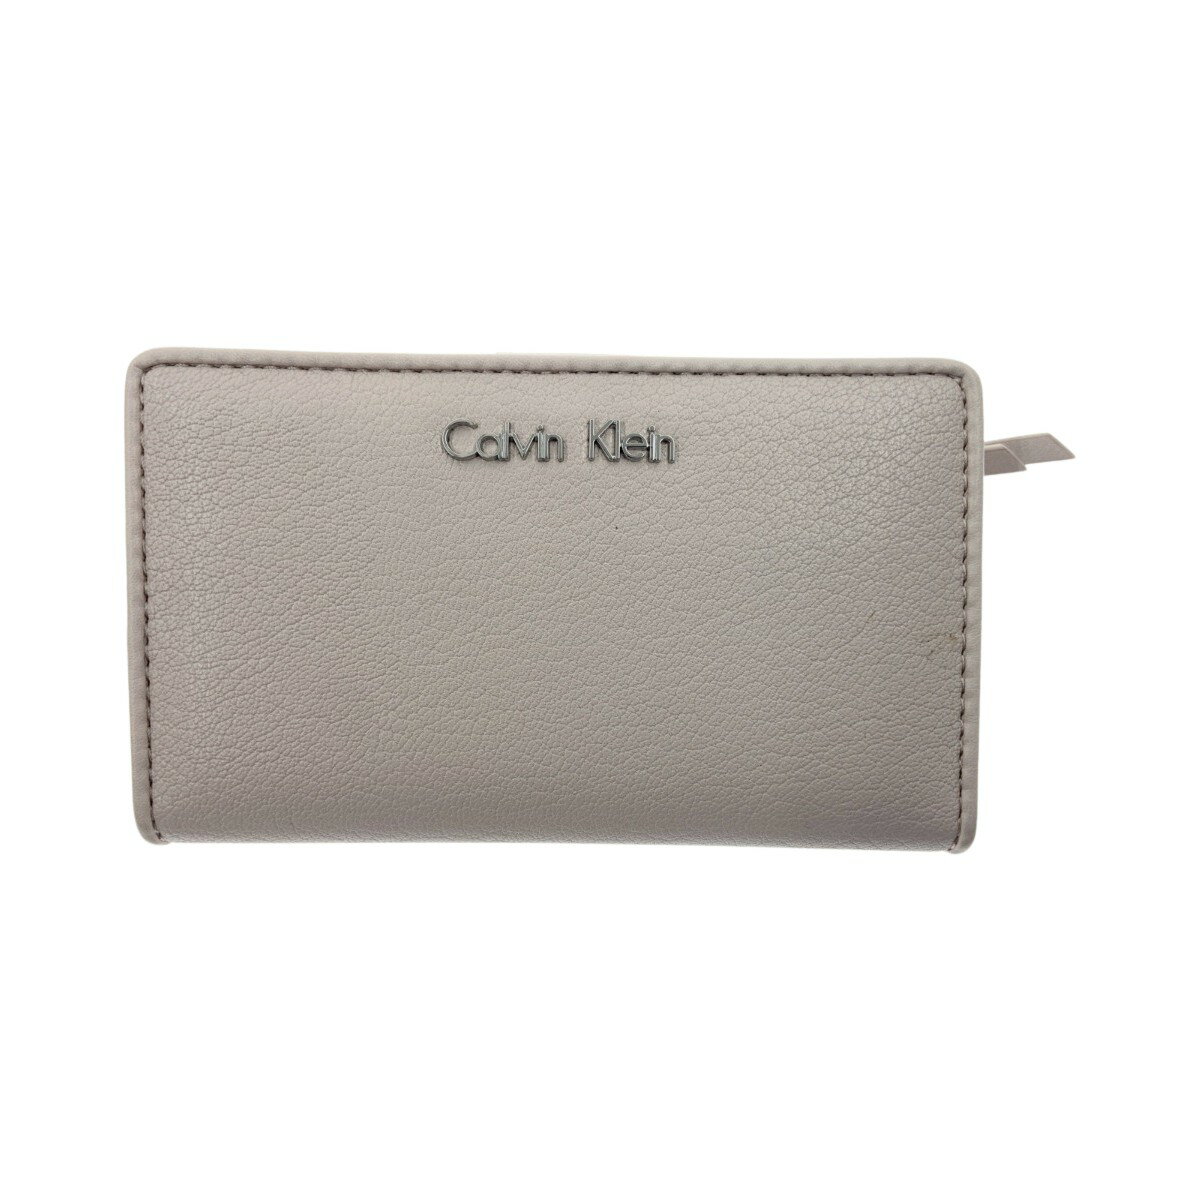 〇〇【中古】Calvin Klein カルバンクライン 二つ折り財布 ピンク Bランク